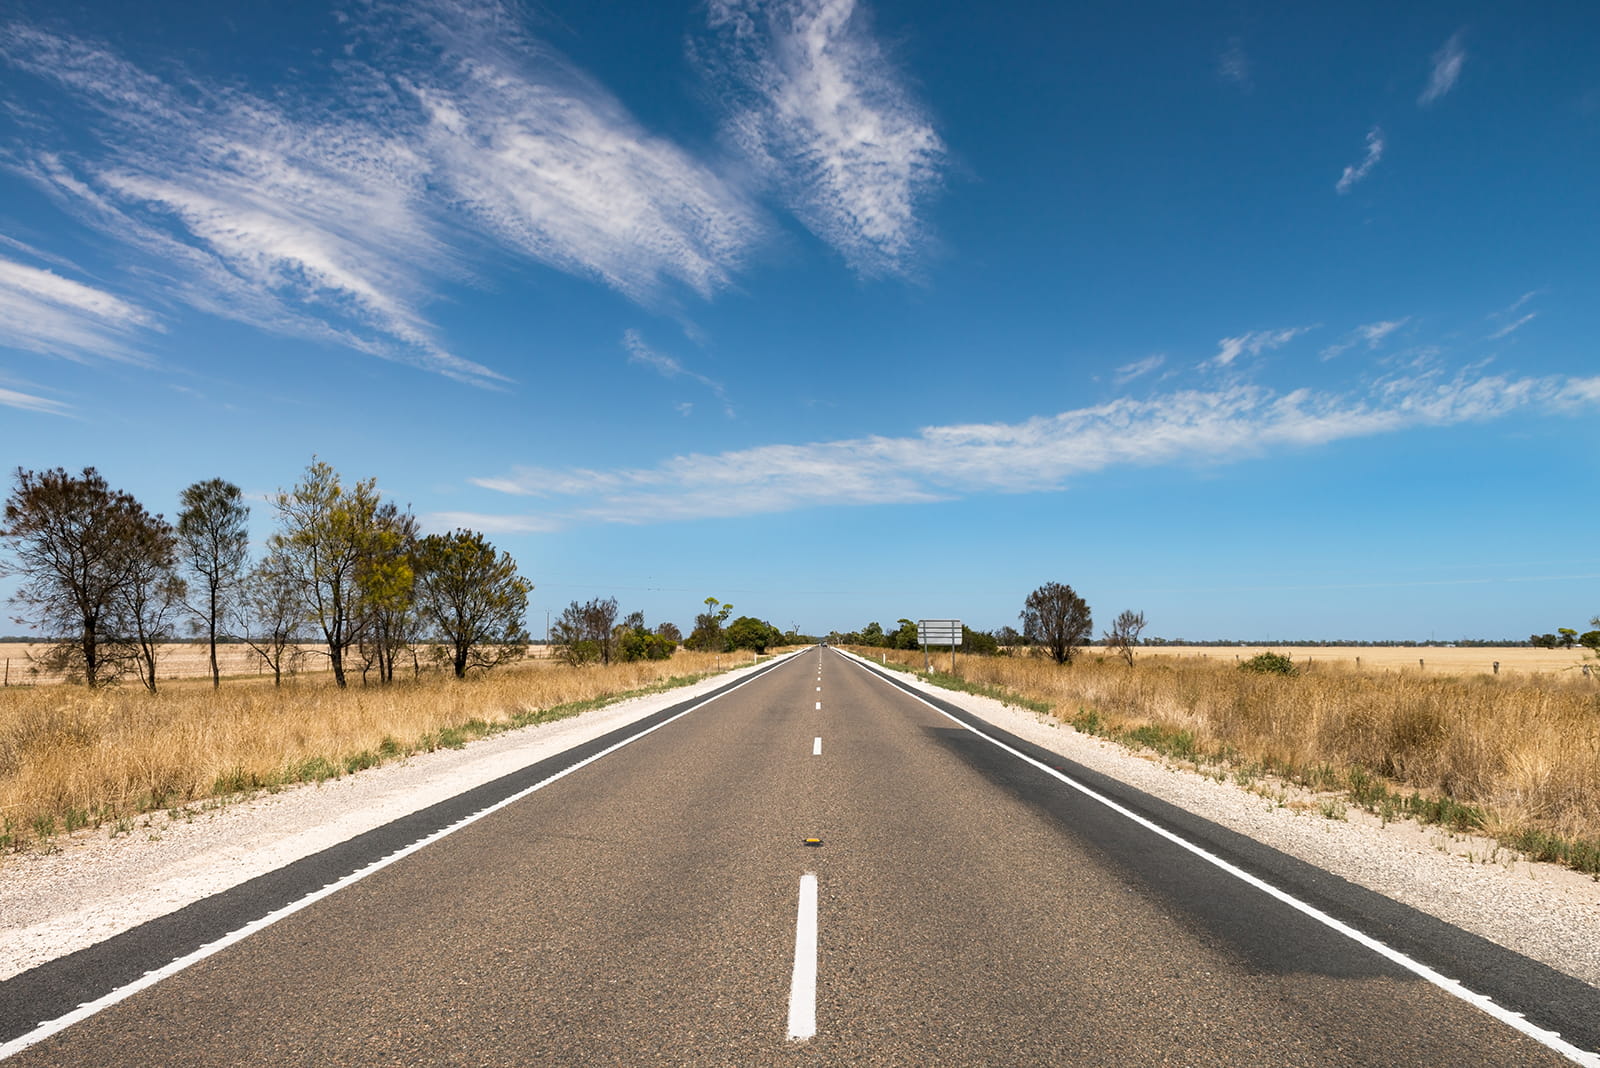 Two lane open road in Australia, blue sky above. 